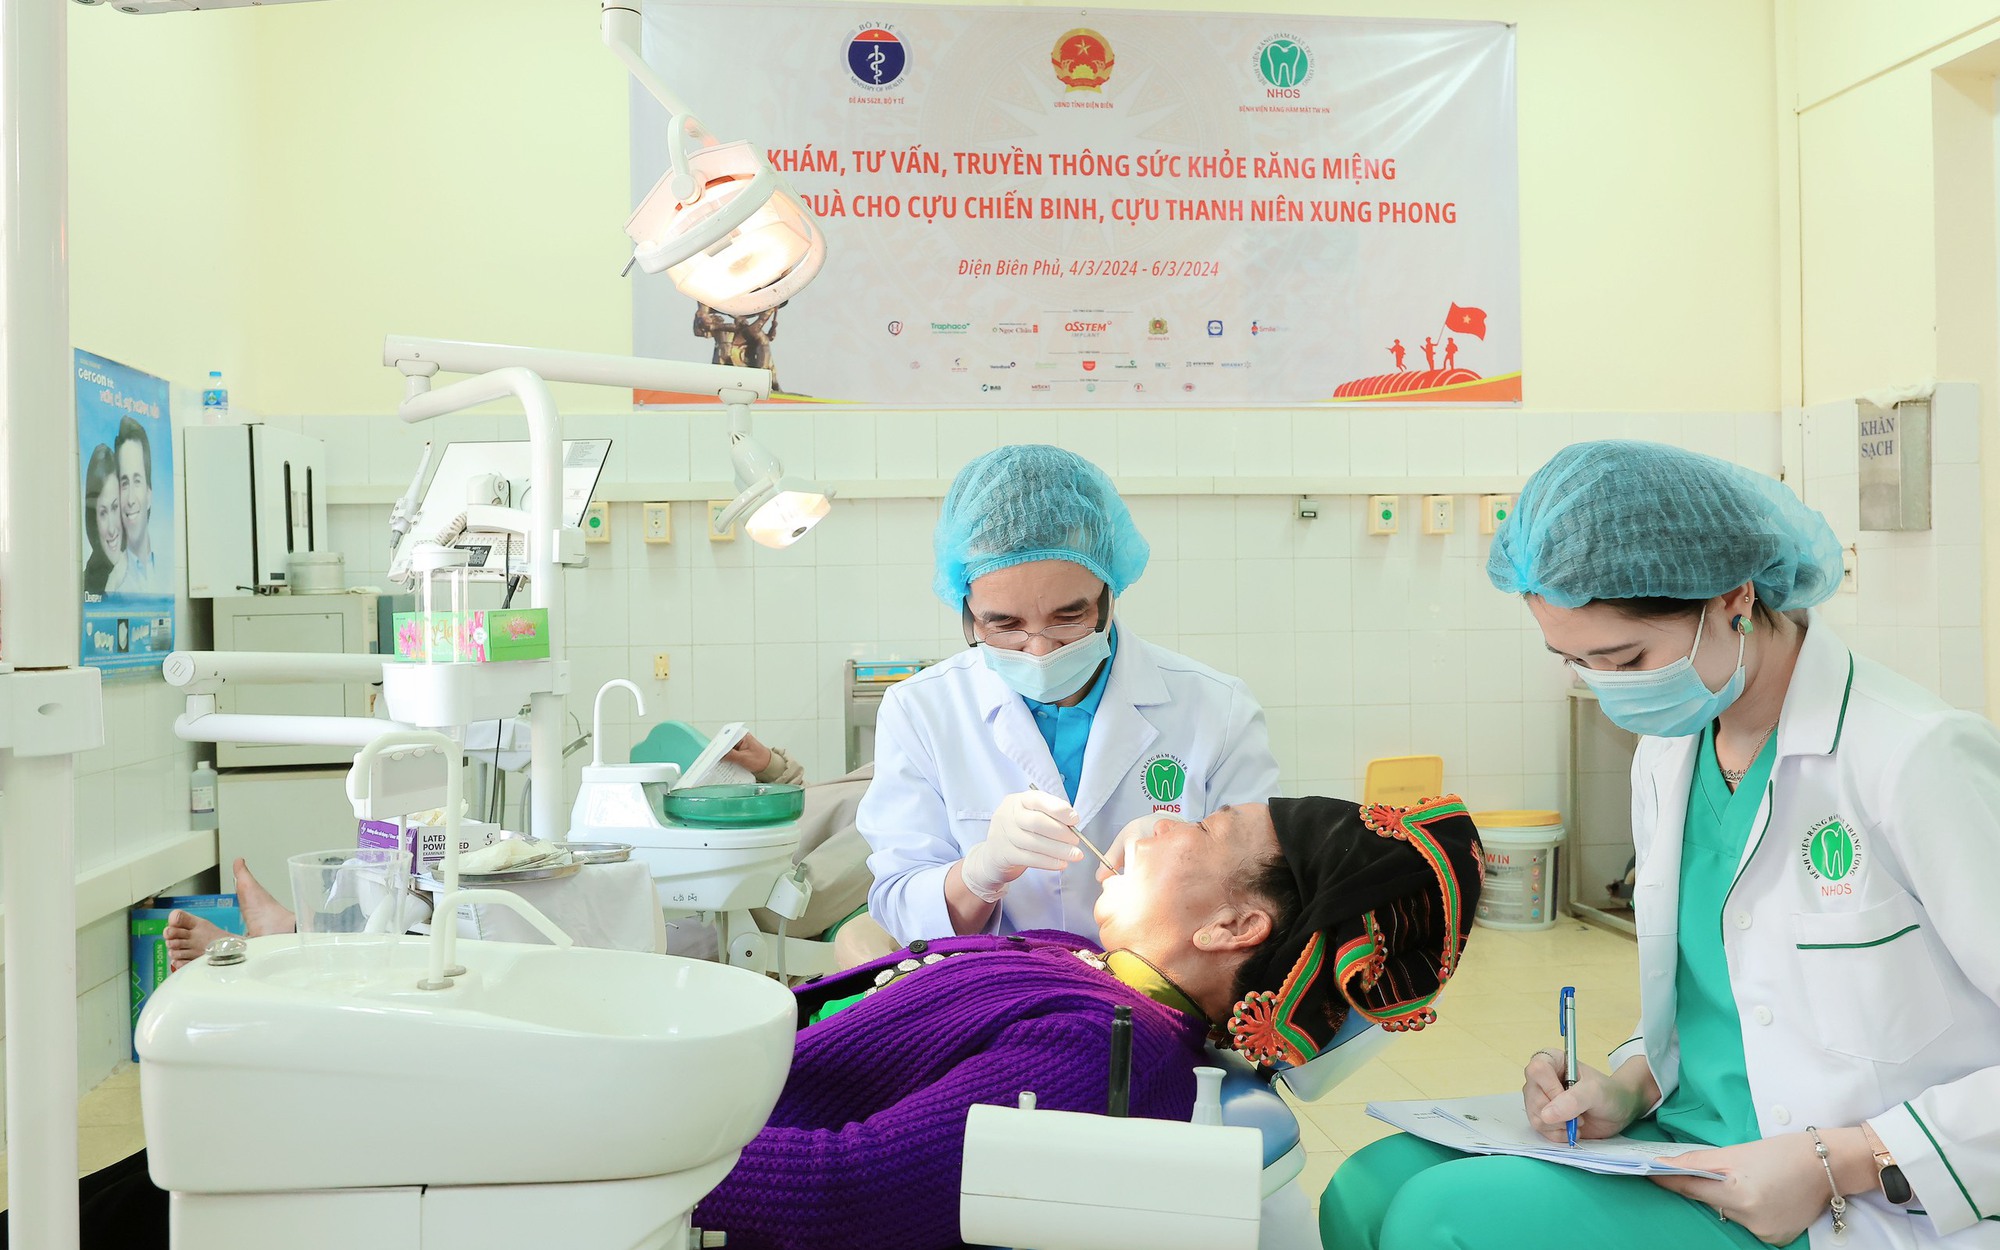 Chăm sóc sức khỏe răng miệng, phẫu thuật miễn phí khuyết tật hàm mặt cho cựu chiến binh, trẻ em Điện Biên